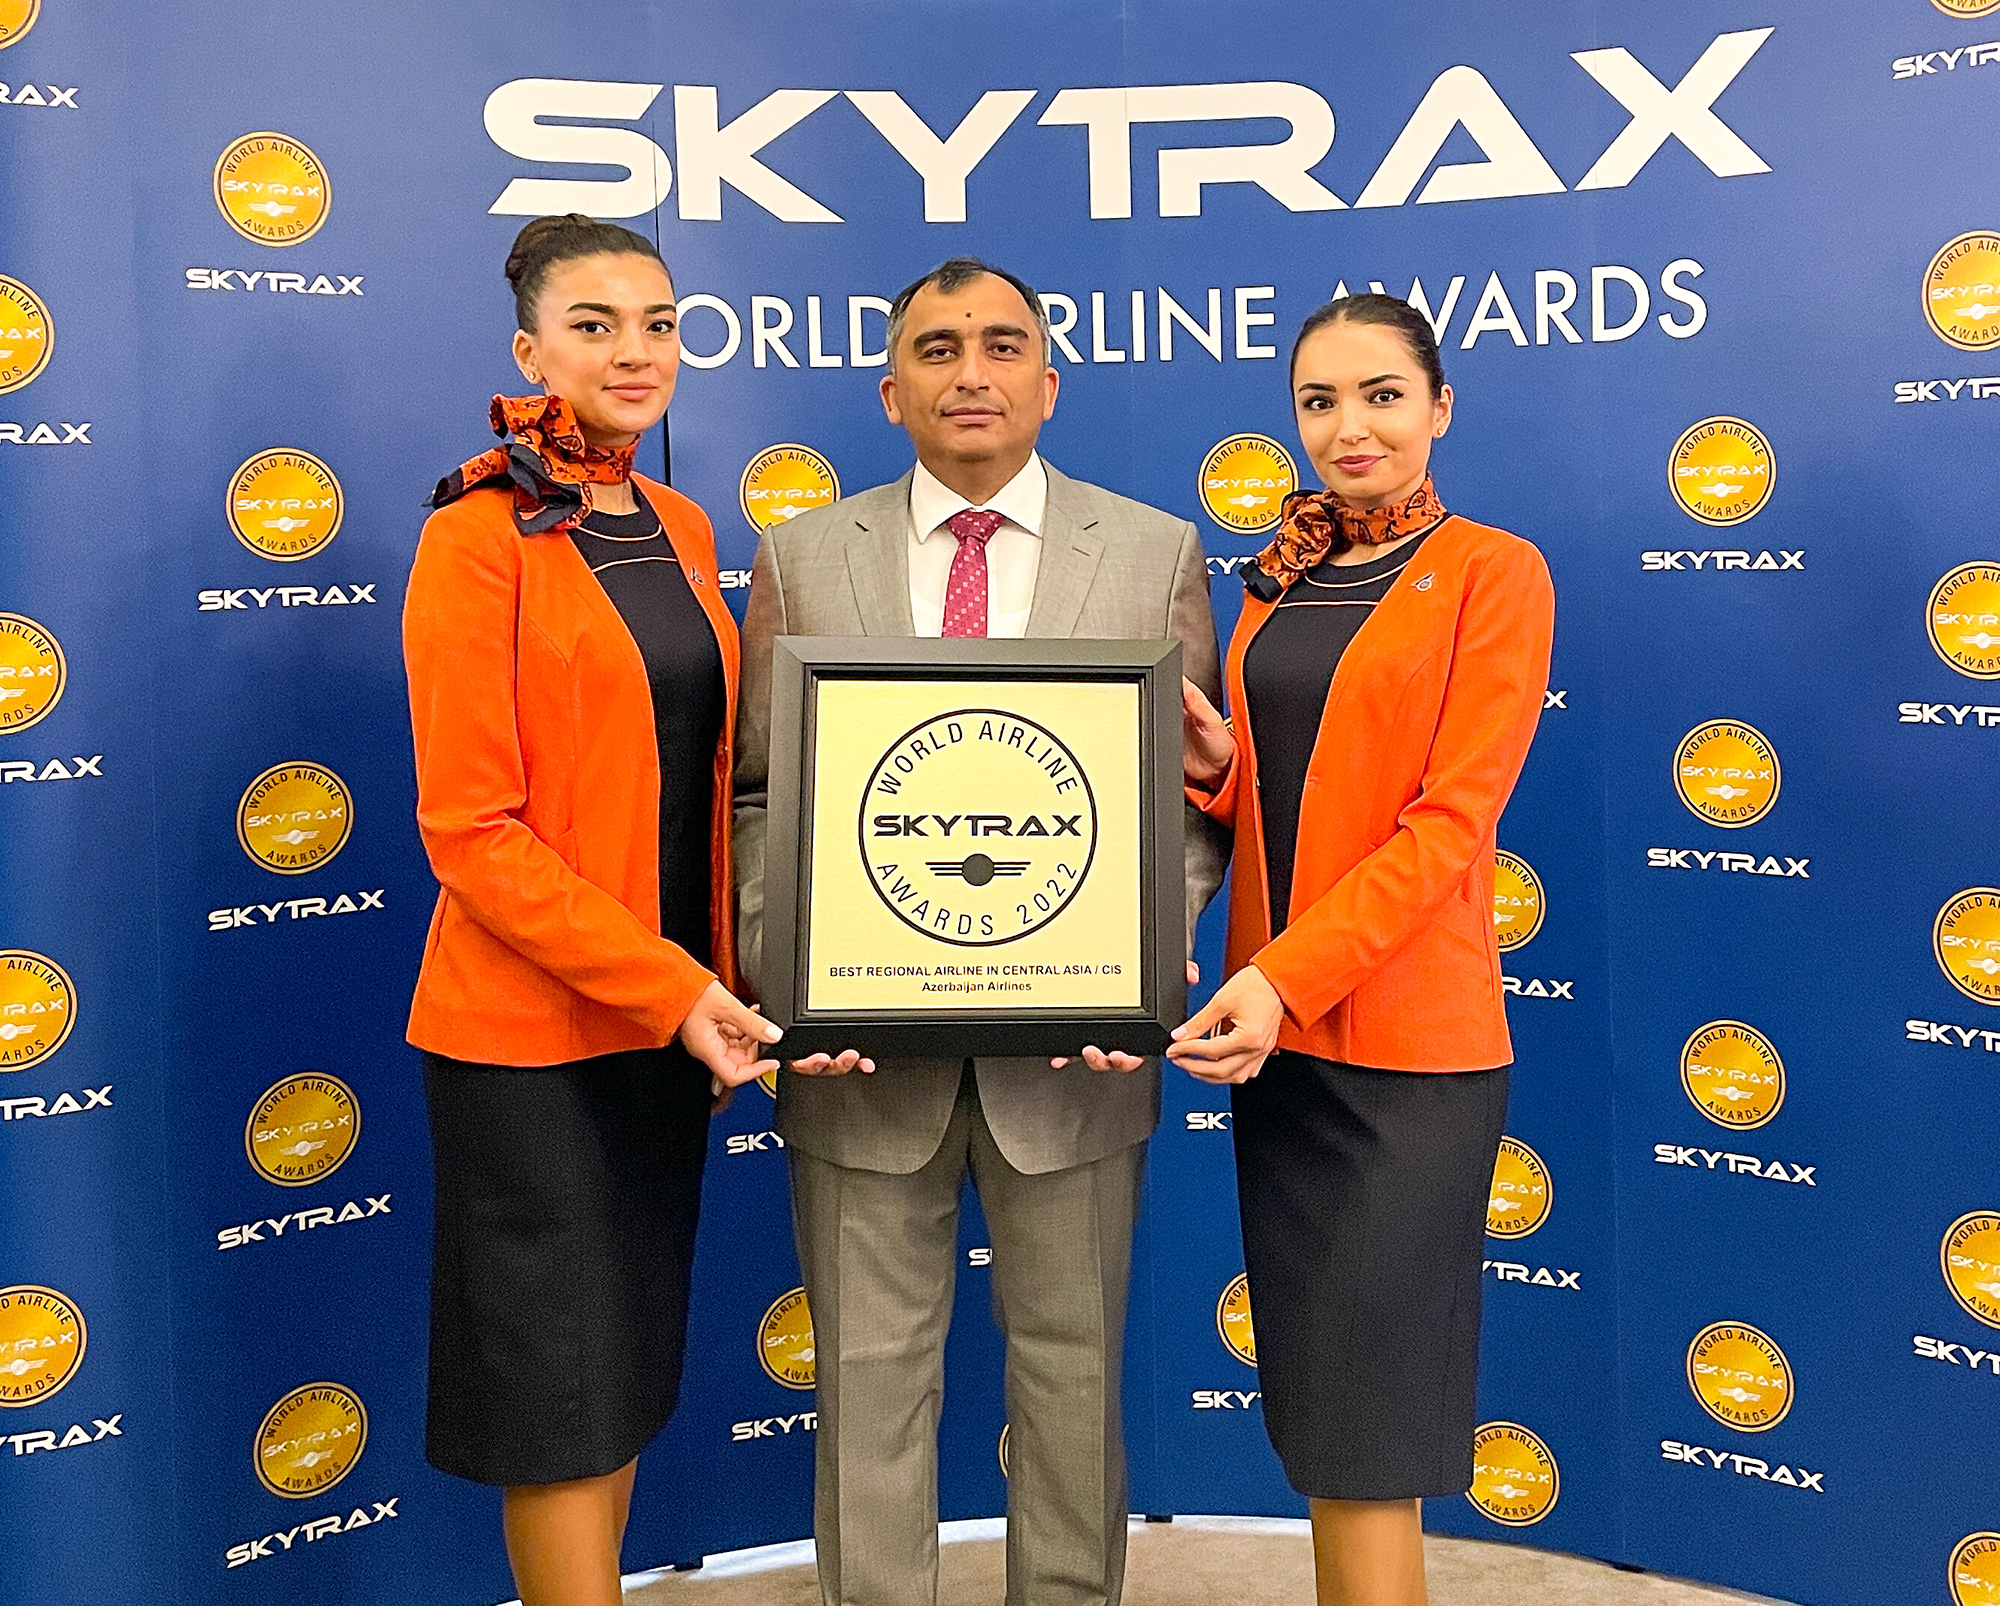 AZAL подтвердил стабильно высокий статус от Skytrax - ФОТО